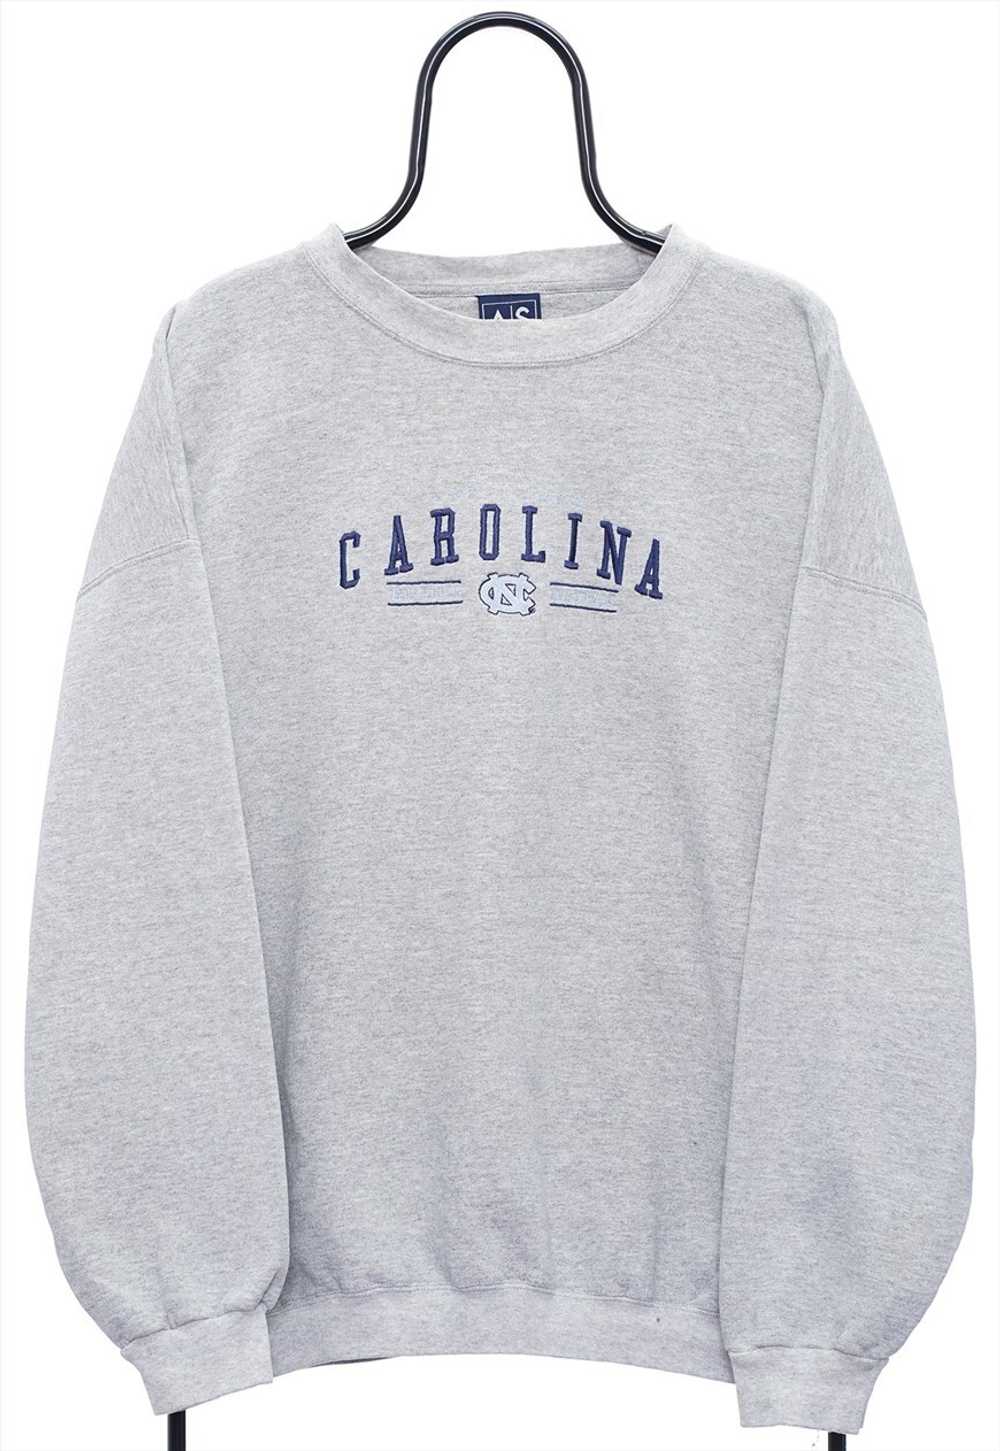 Vintage Carolina Tarheels NCAA Grey Sweatshirt Me… - image 1